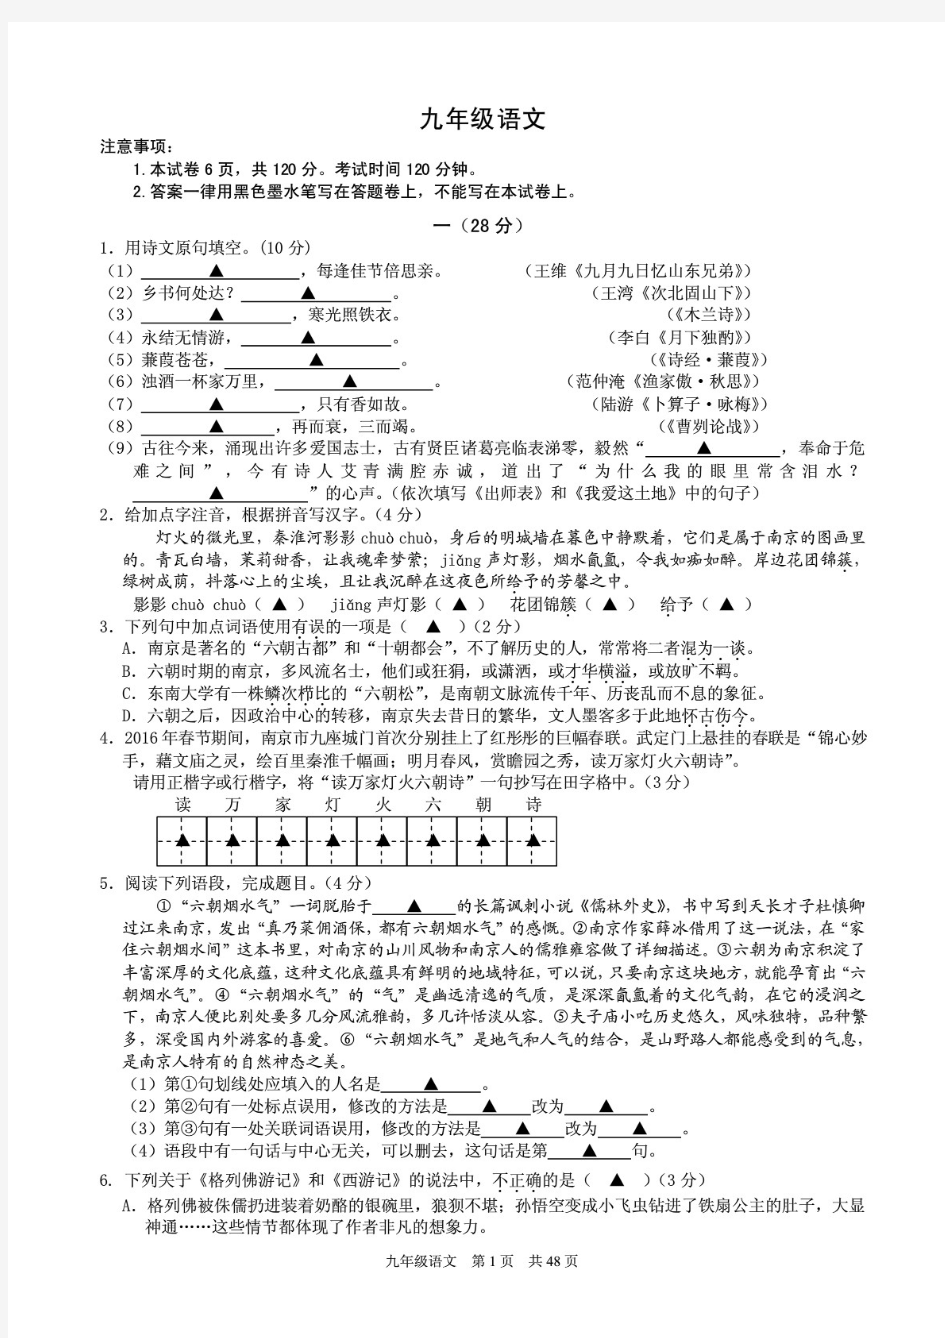 中考语文模拟测试卷及答案共6套